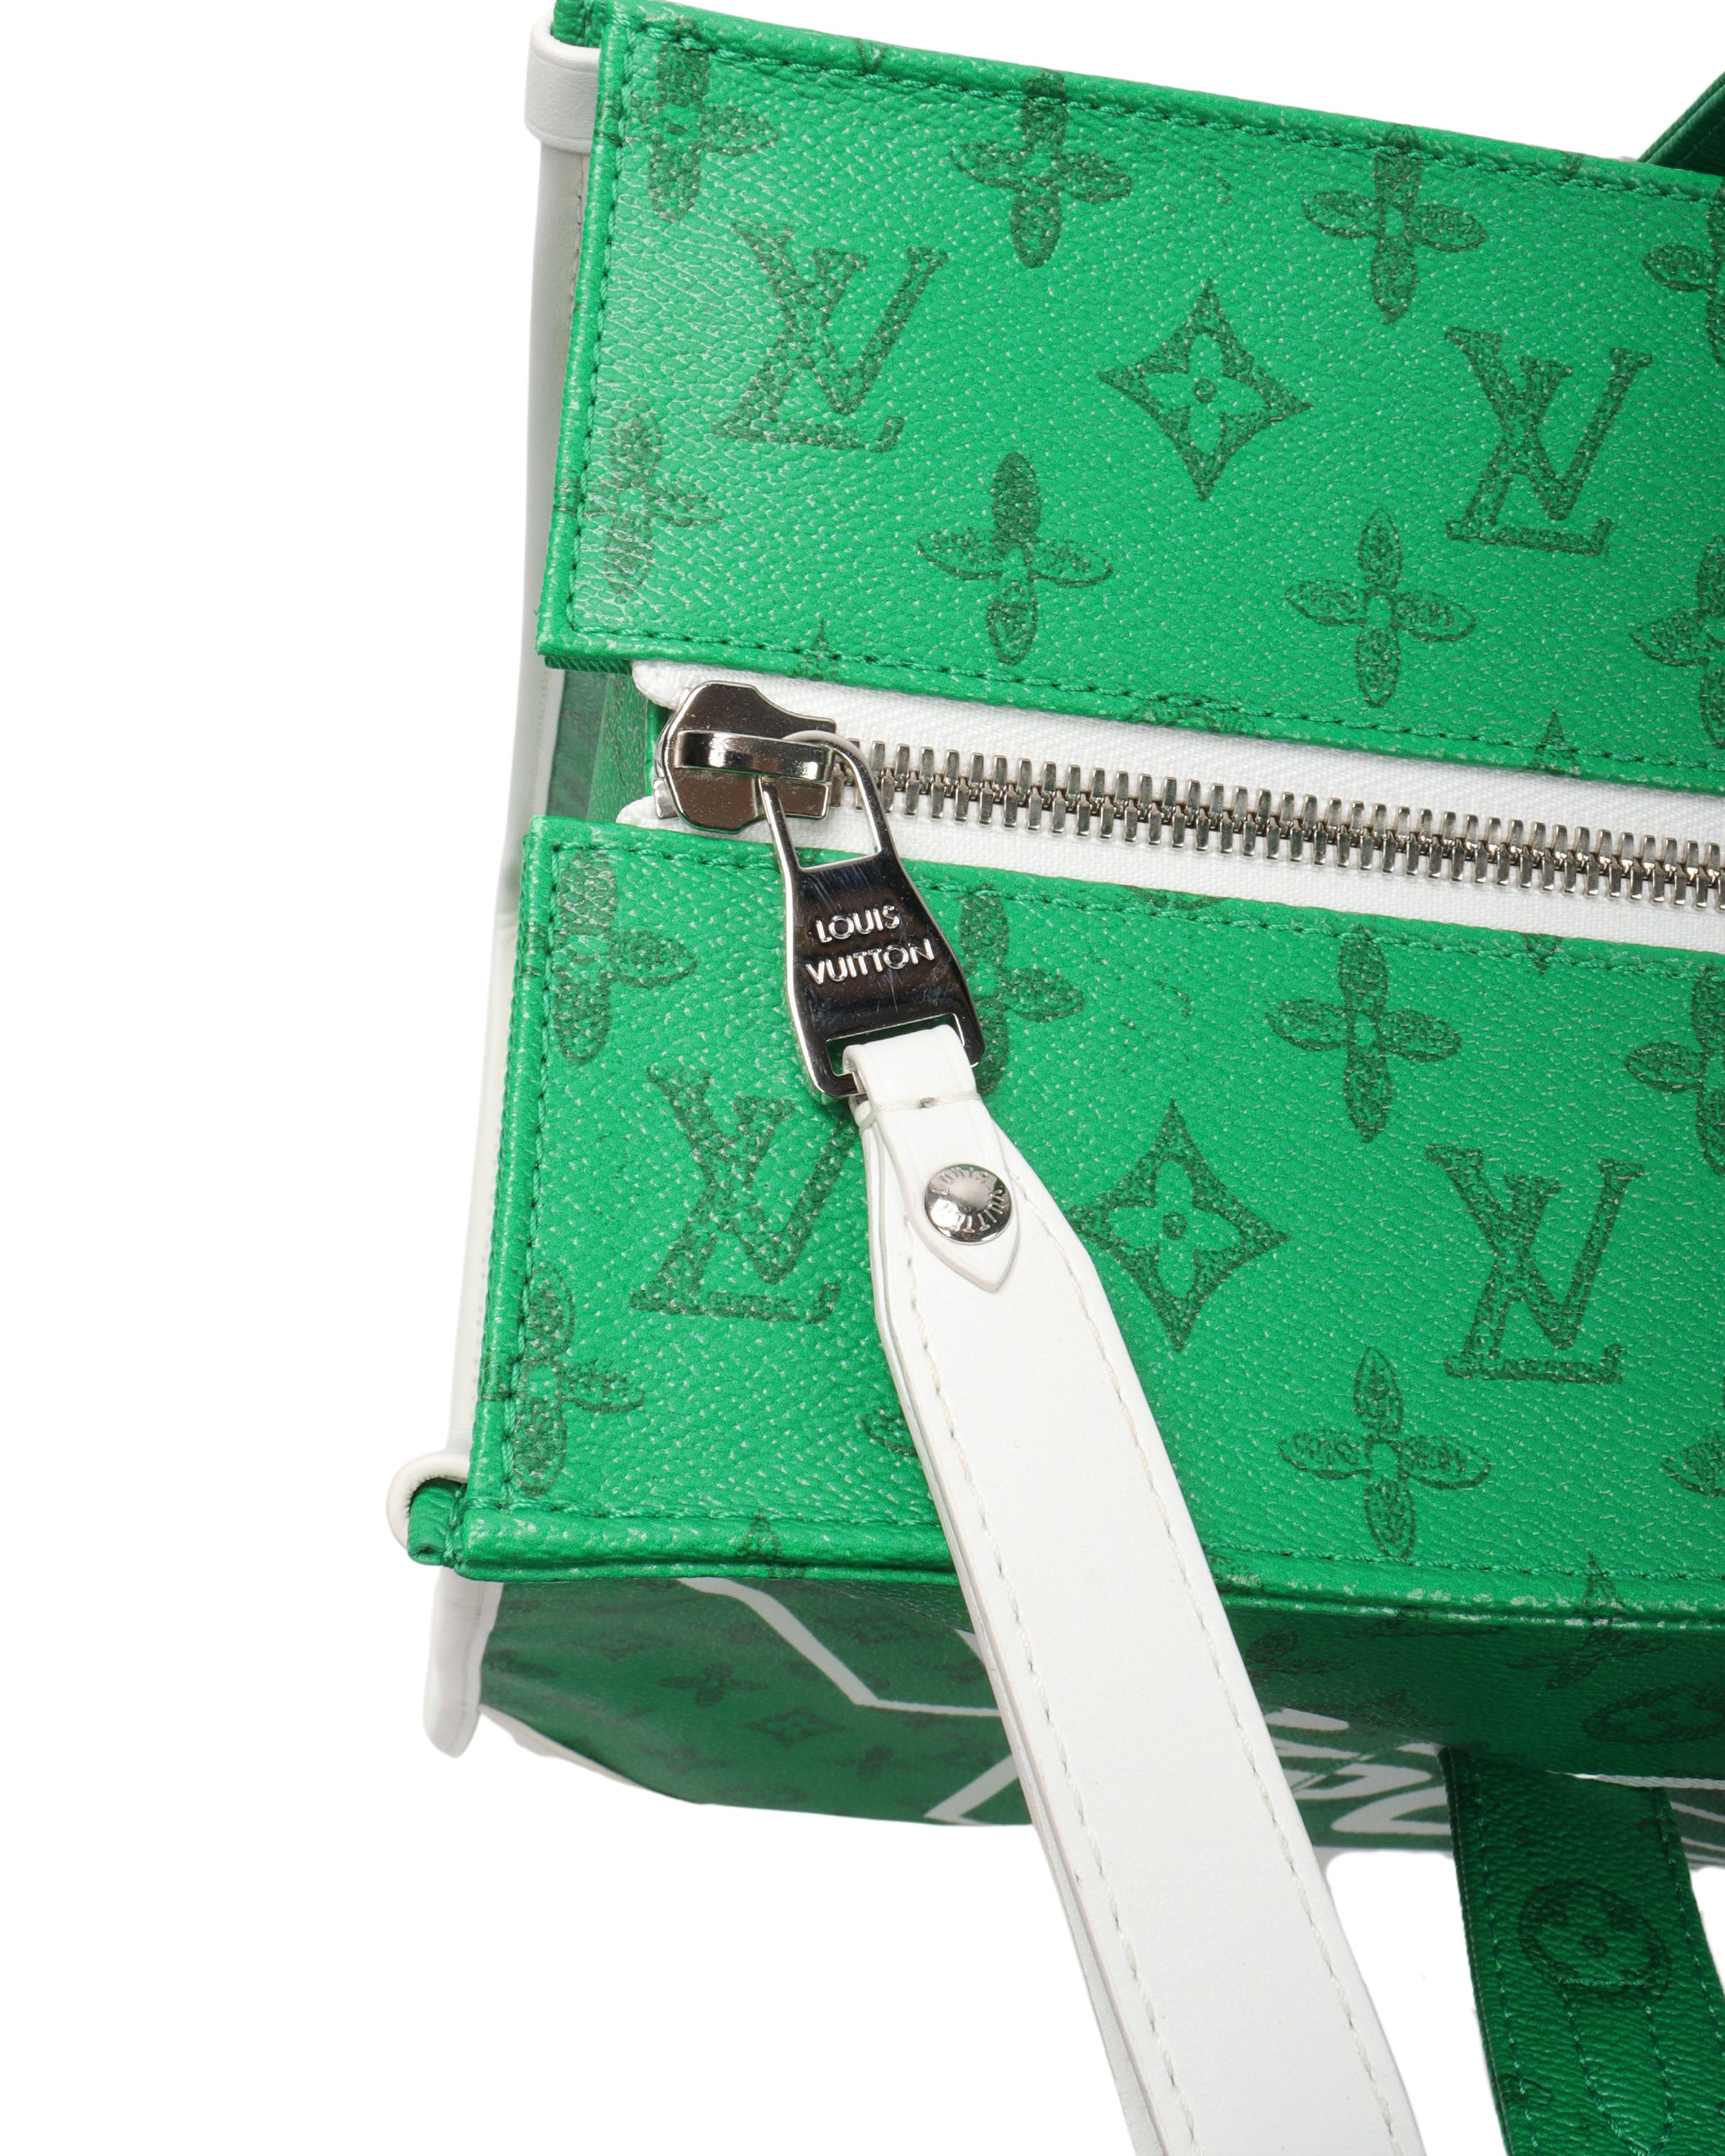 Louis Vuitton Tourist Vs. Purist Bag